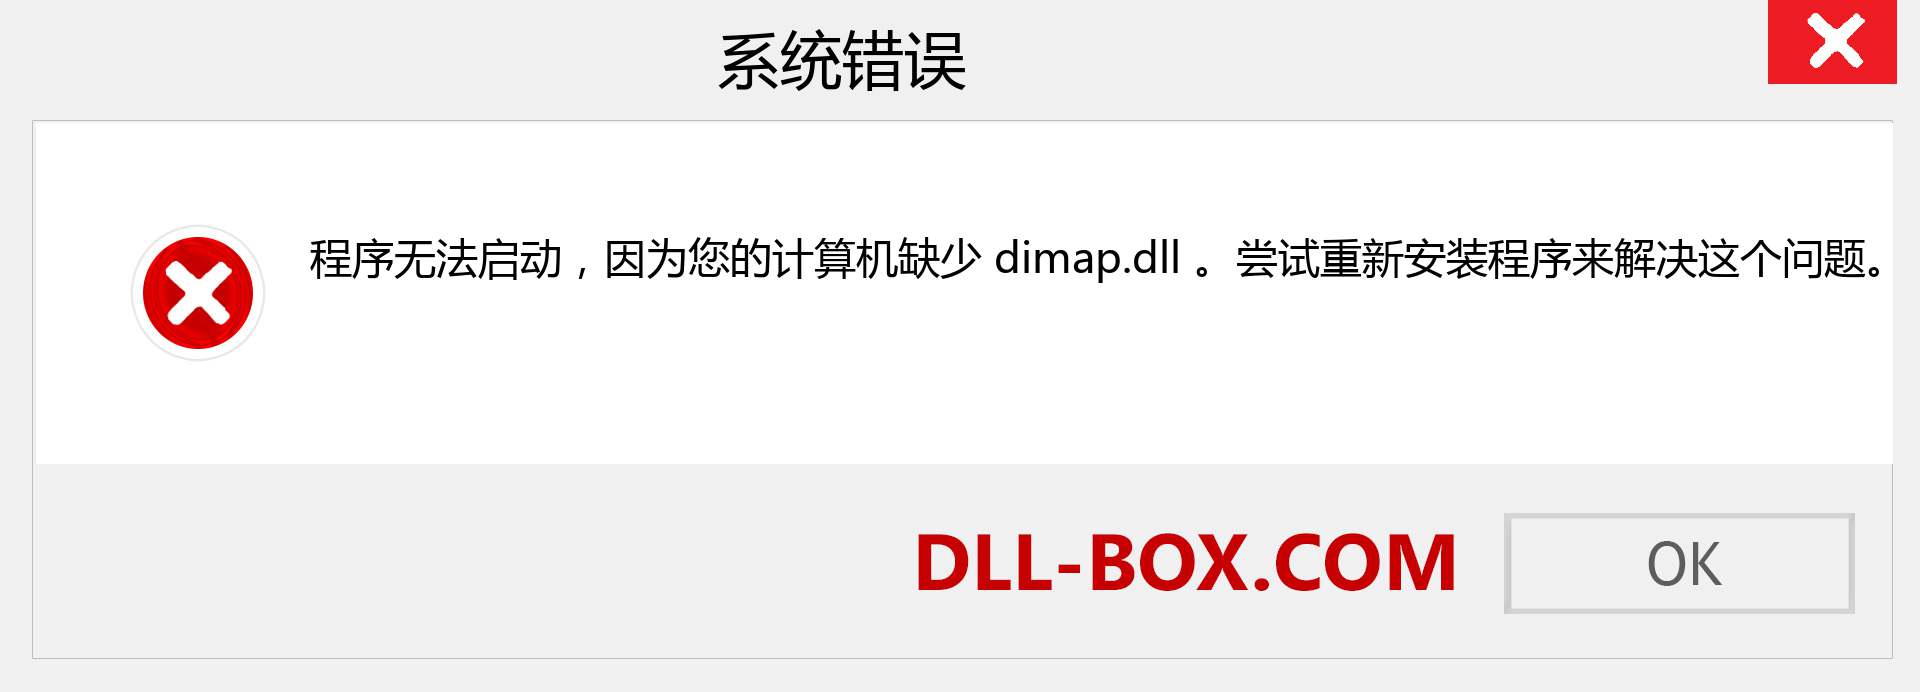 dimap.dll 文件丢失？。 适用于 Windows 7、8、10 的下载 - 修复 Windows、照片、图像上的 dimap dll 丢失错误